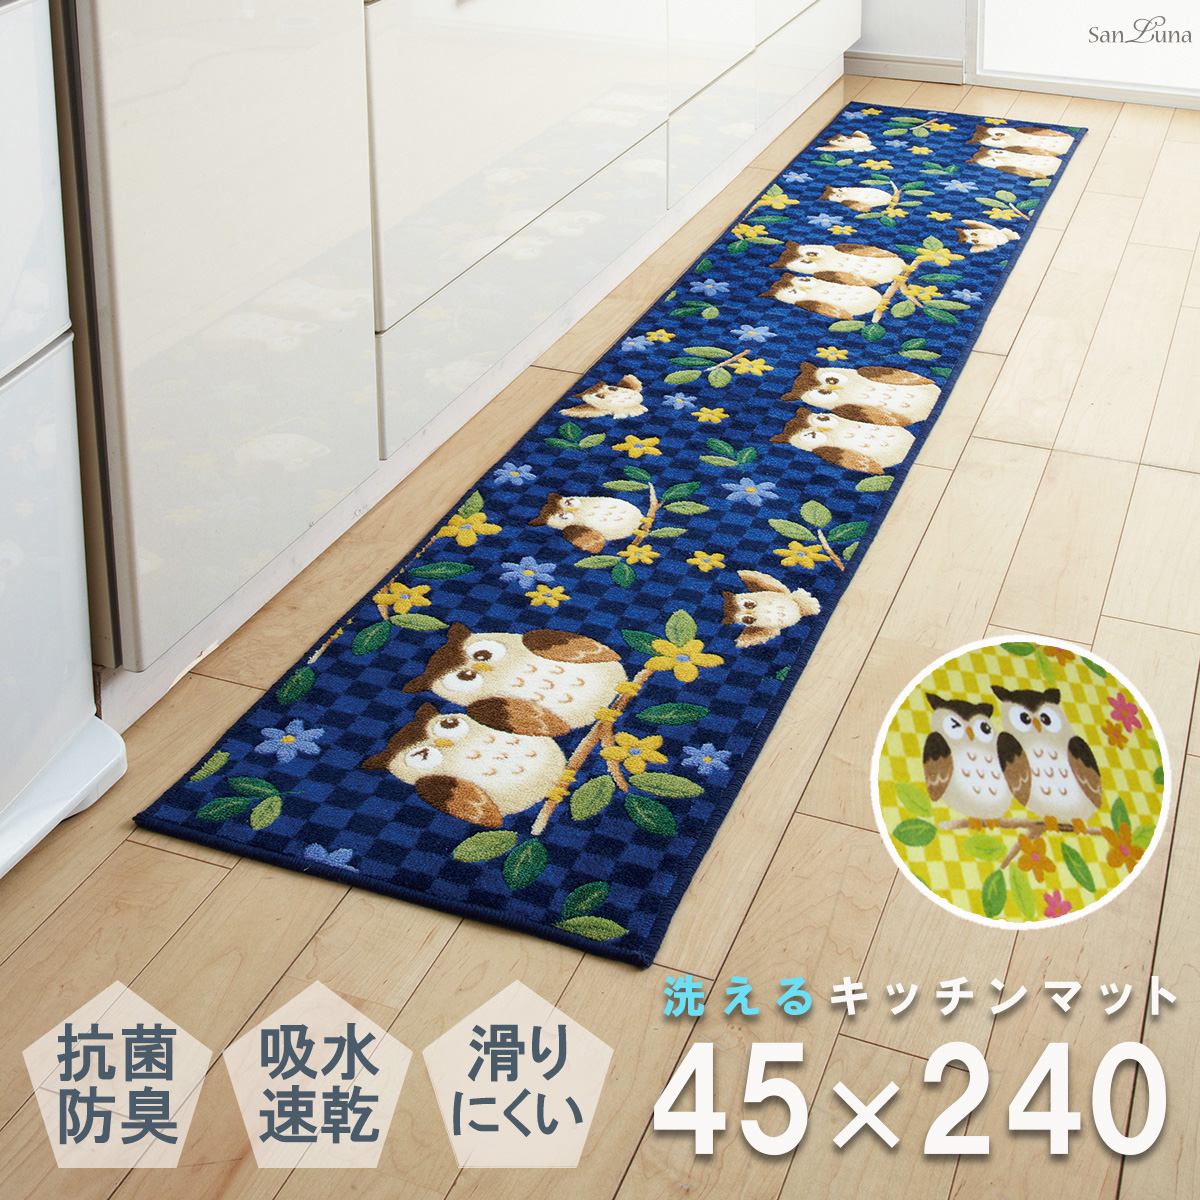 キッチンマット 45×240cm ふくろう 日本製 抗菌 防臭 吸水 速乾 洗える